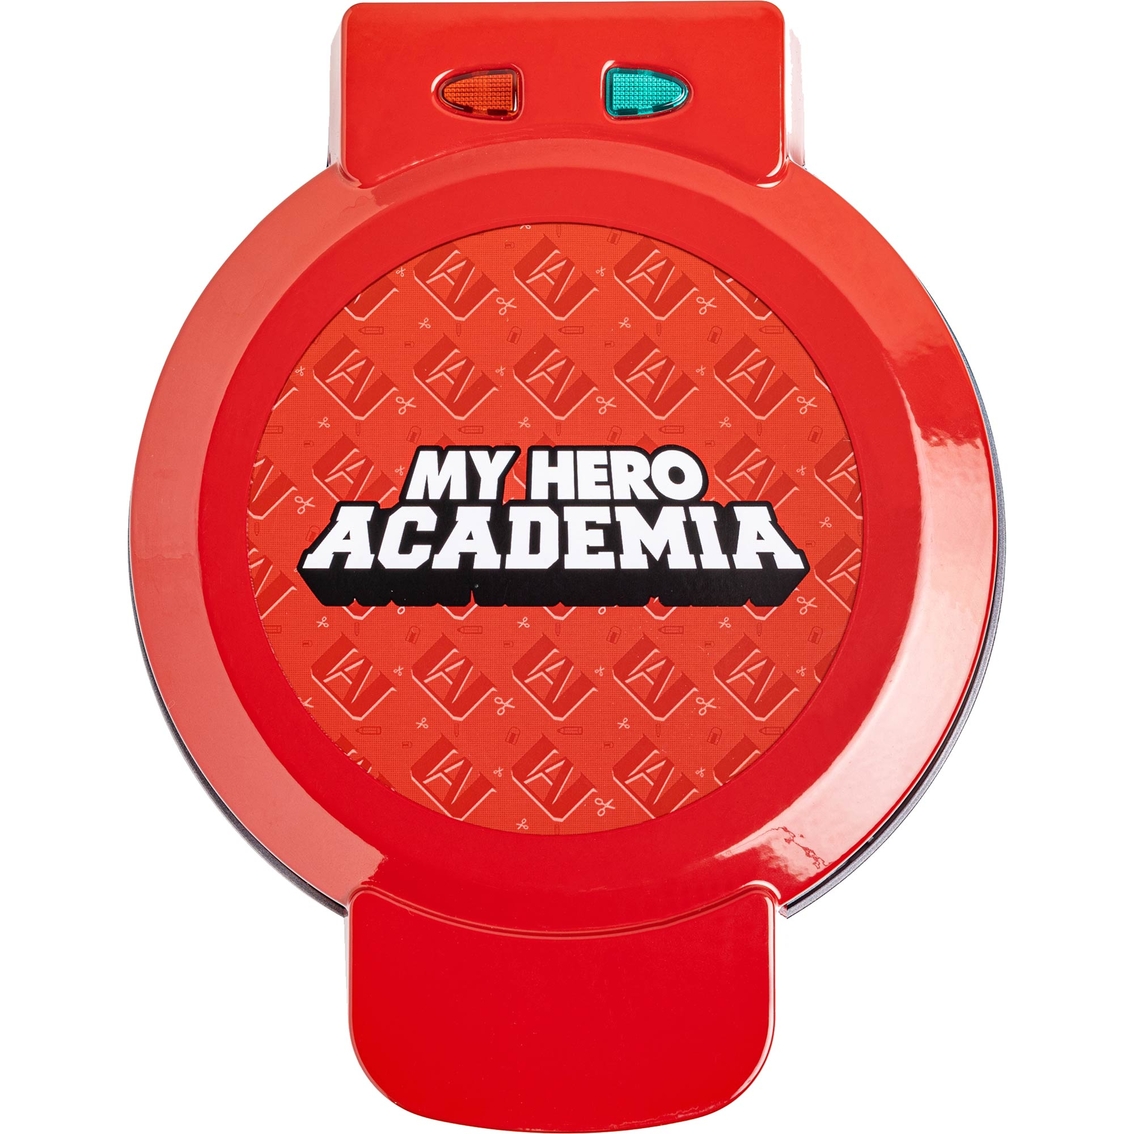 My Hero Academia Waffle Maker - Image 3 of 10